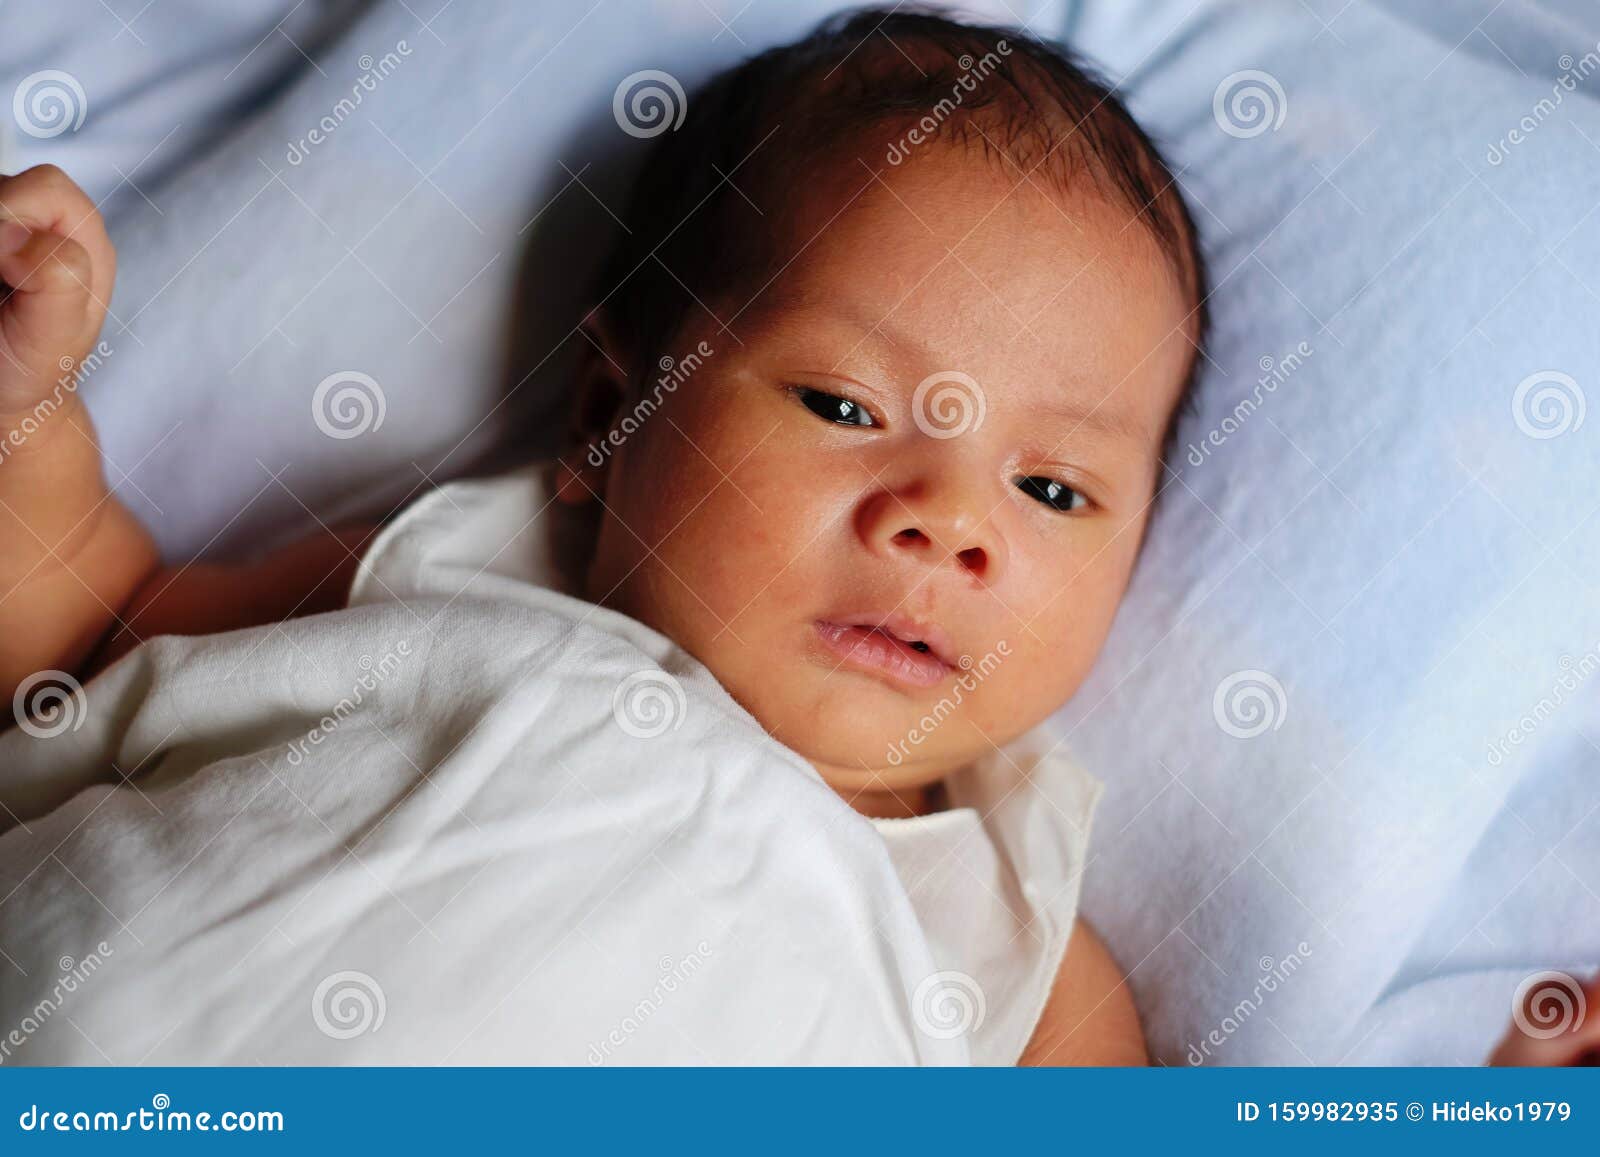 Newborn Baby Waking Up And Opening Eyes Stock Image ...